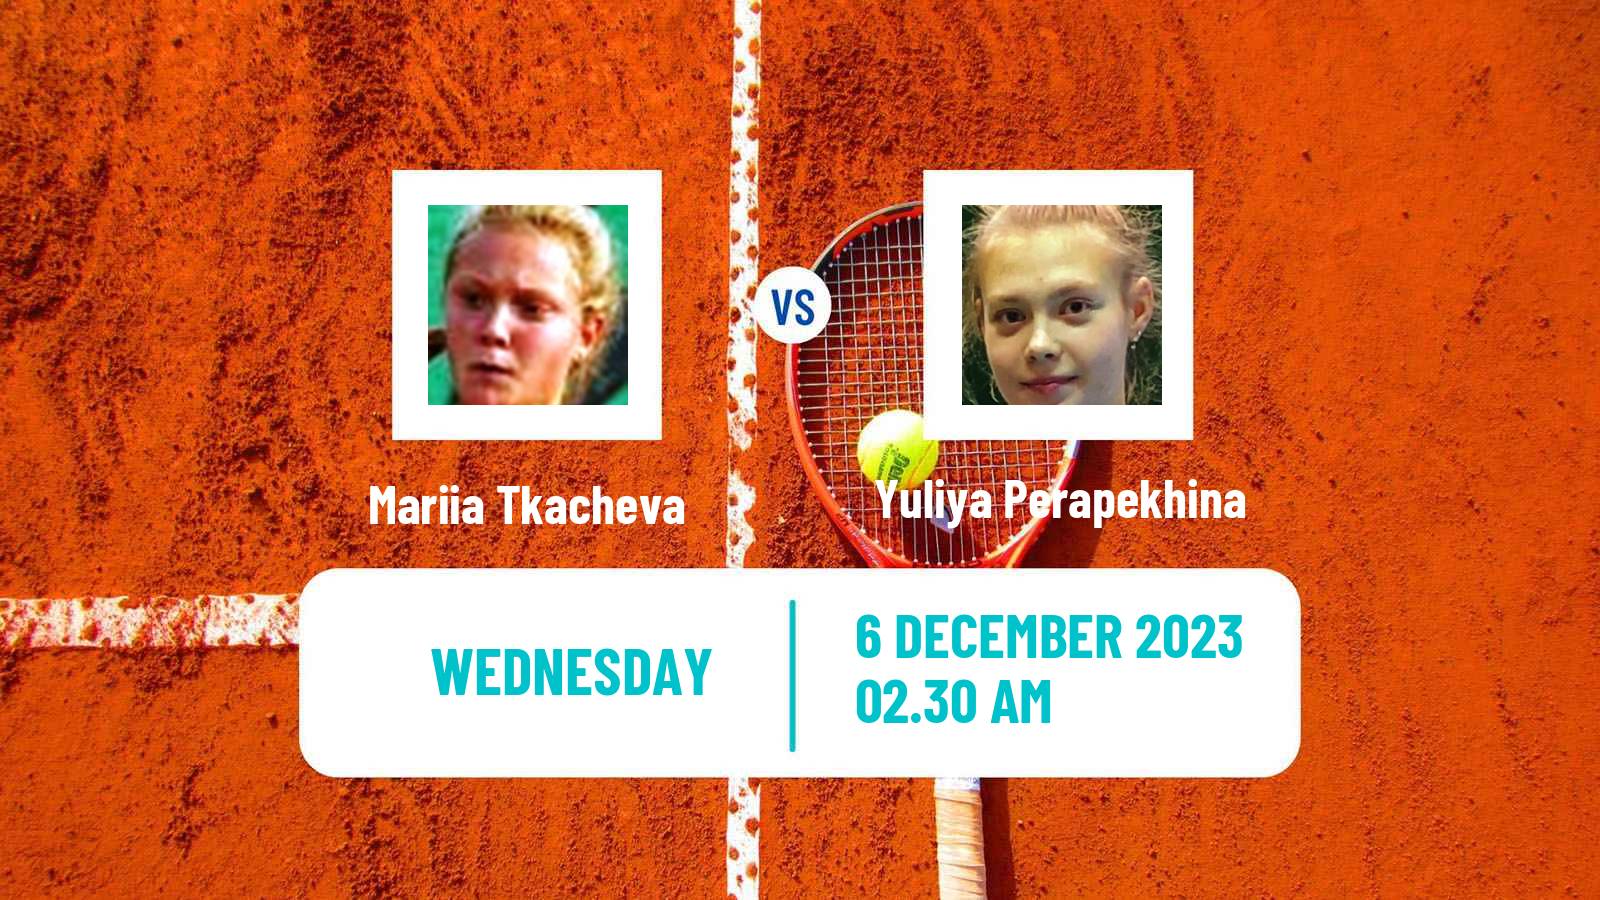 Tennis ITF W15 Sharm Elsheikh 22 Women 2023 Mariia Tkacheva - Yuliya Perapekhina